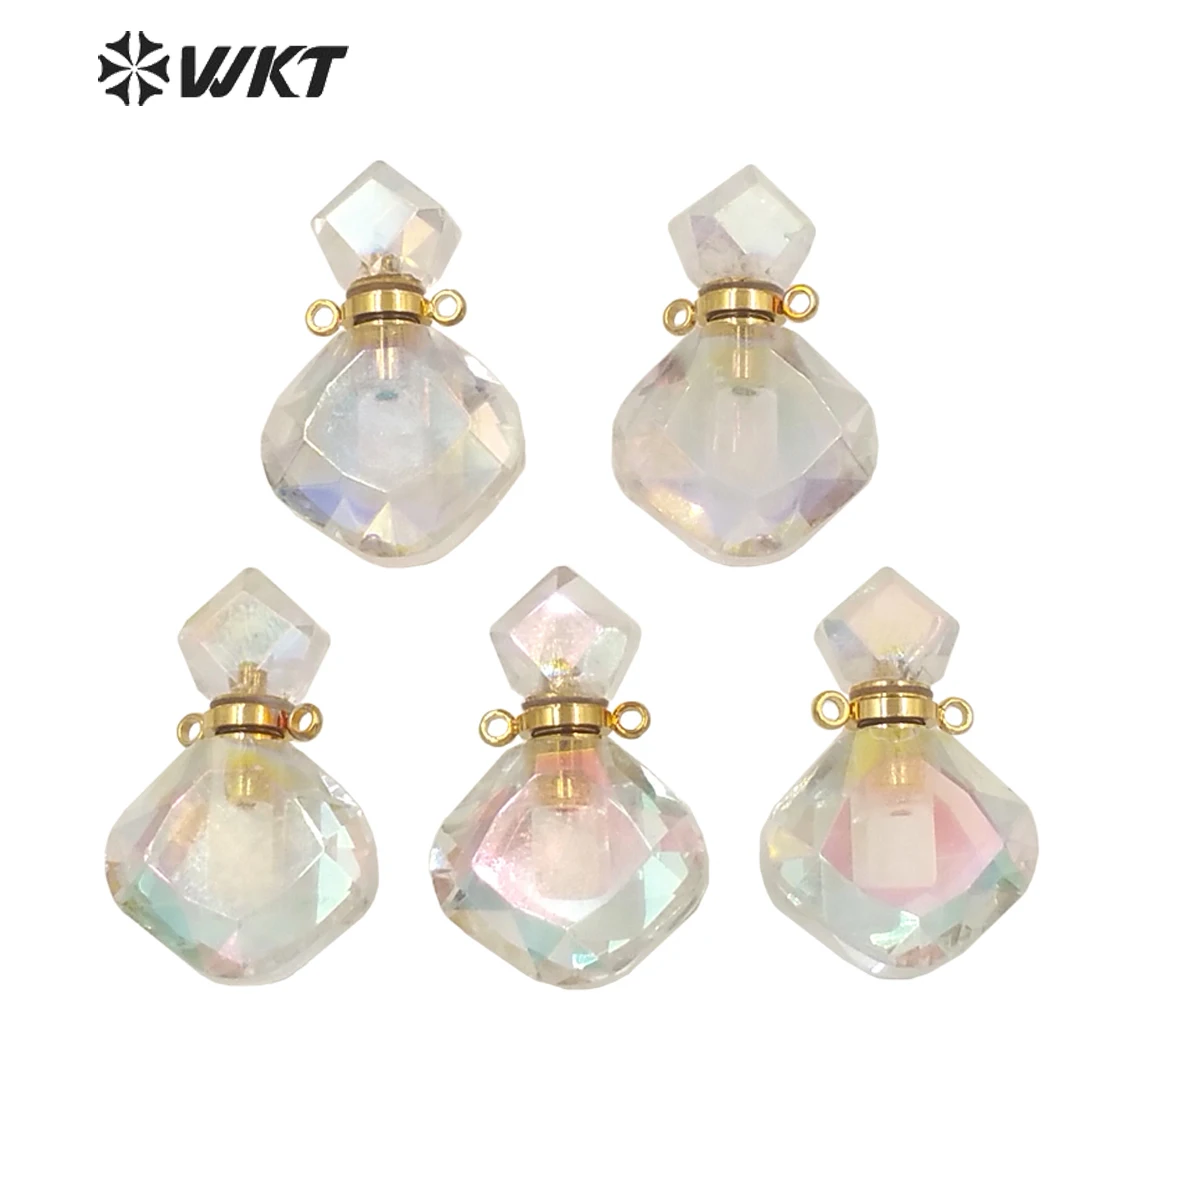 wt-p1674-amazing-newest-fashion-faceted-cut-angel-aura-quartz-perfume-bottle-pendant-for-necklace